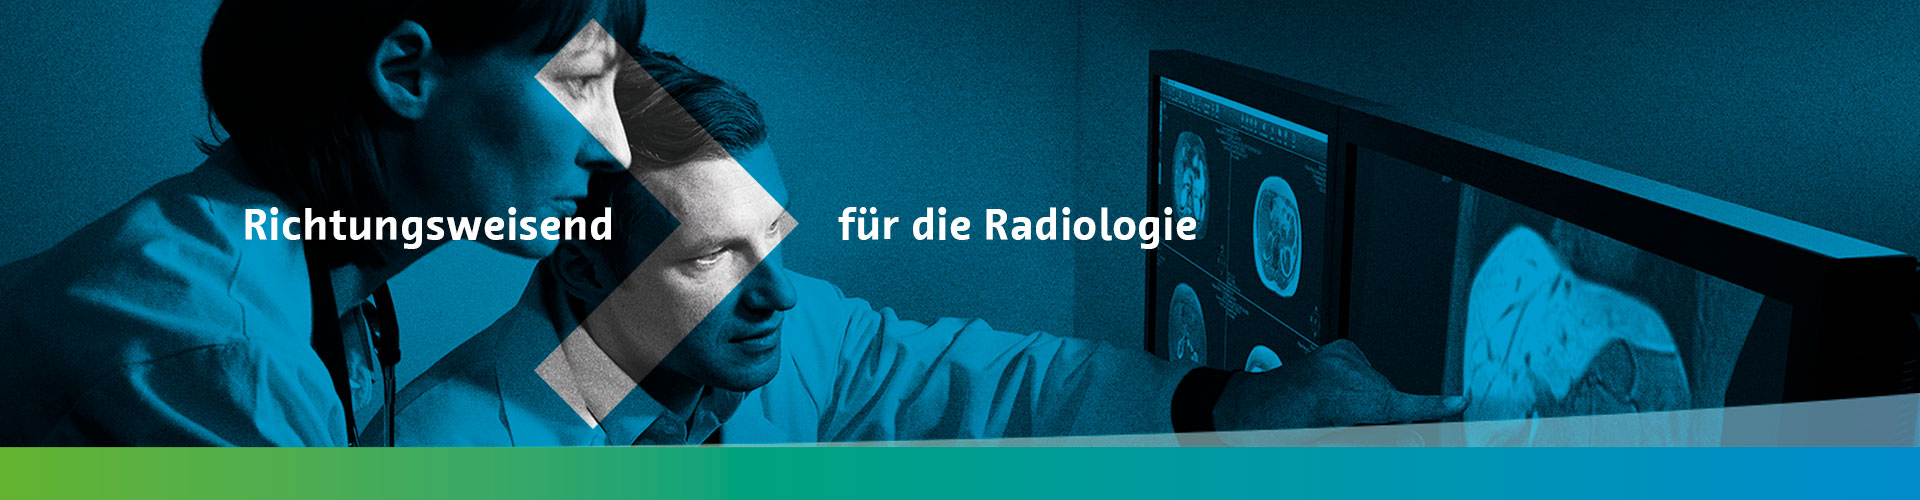 Richtungsweisend: Wir entwickeln die Radiologie weiter.